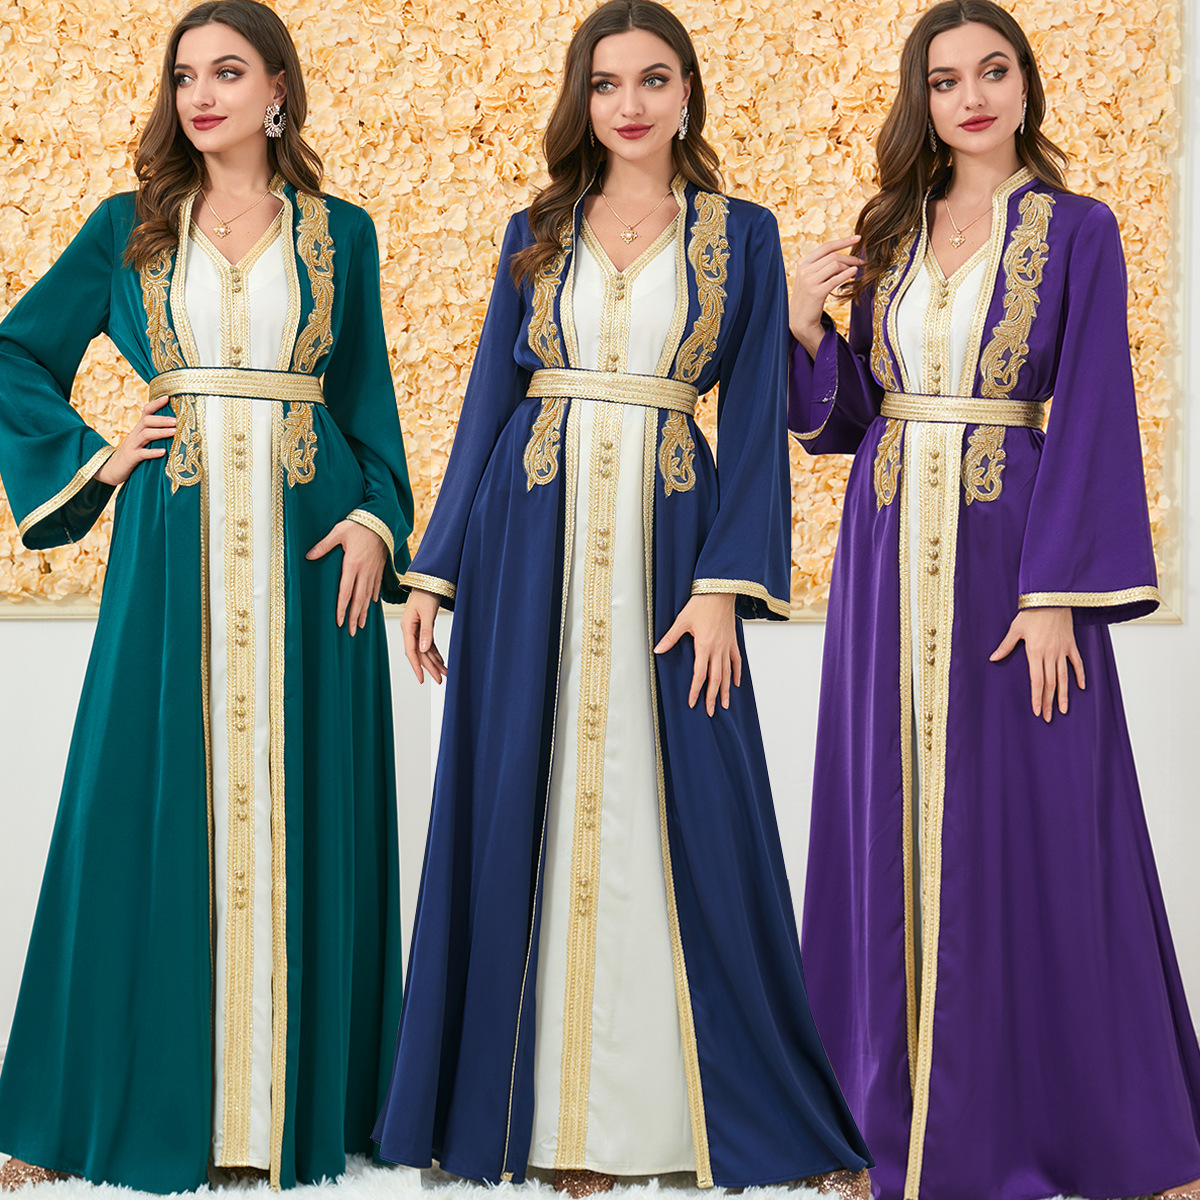 89muslim dress New Autumn and Winter Women's Wear Foreign Trade Two Piece Long Dress Cross Border Long Sleeve Dress